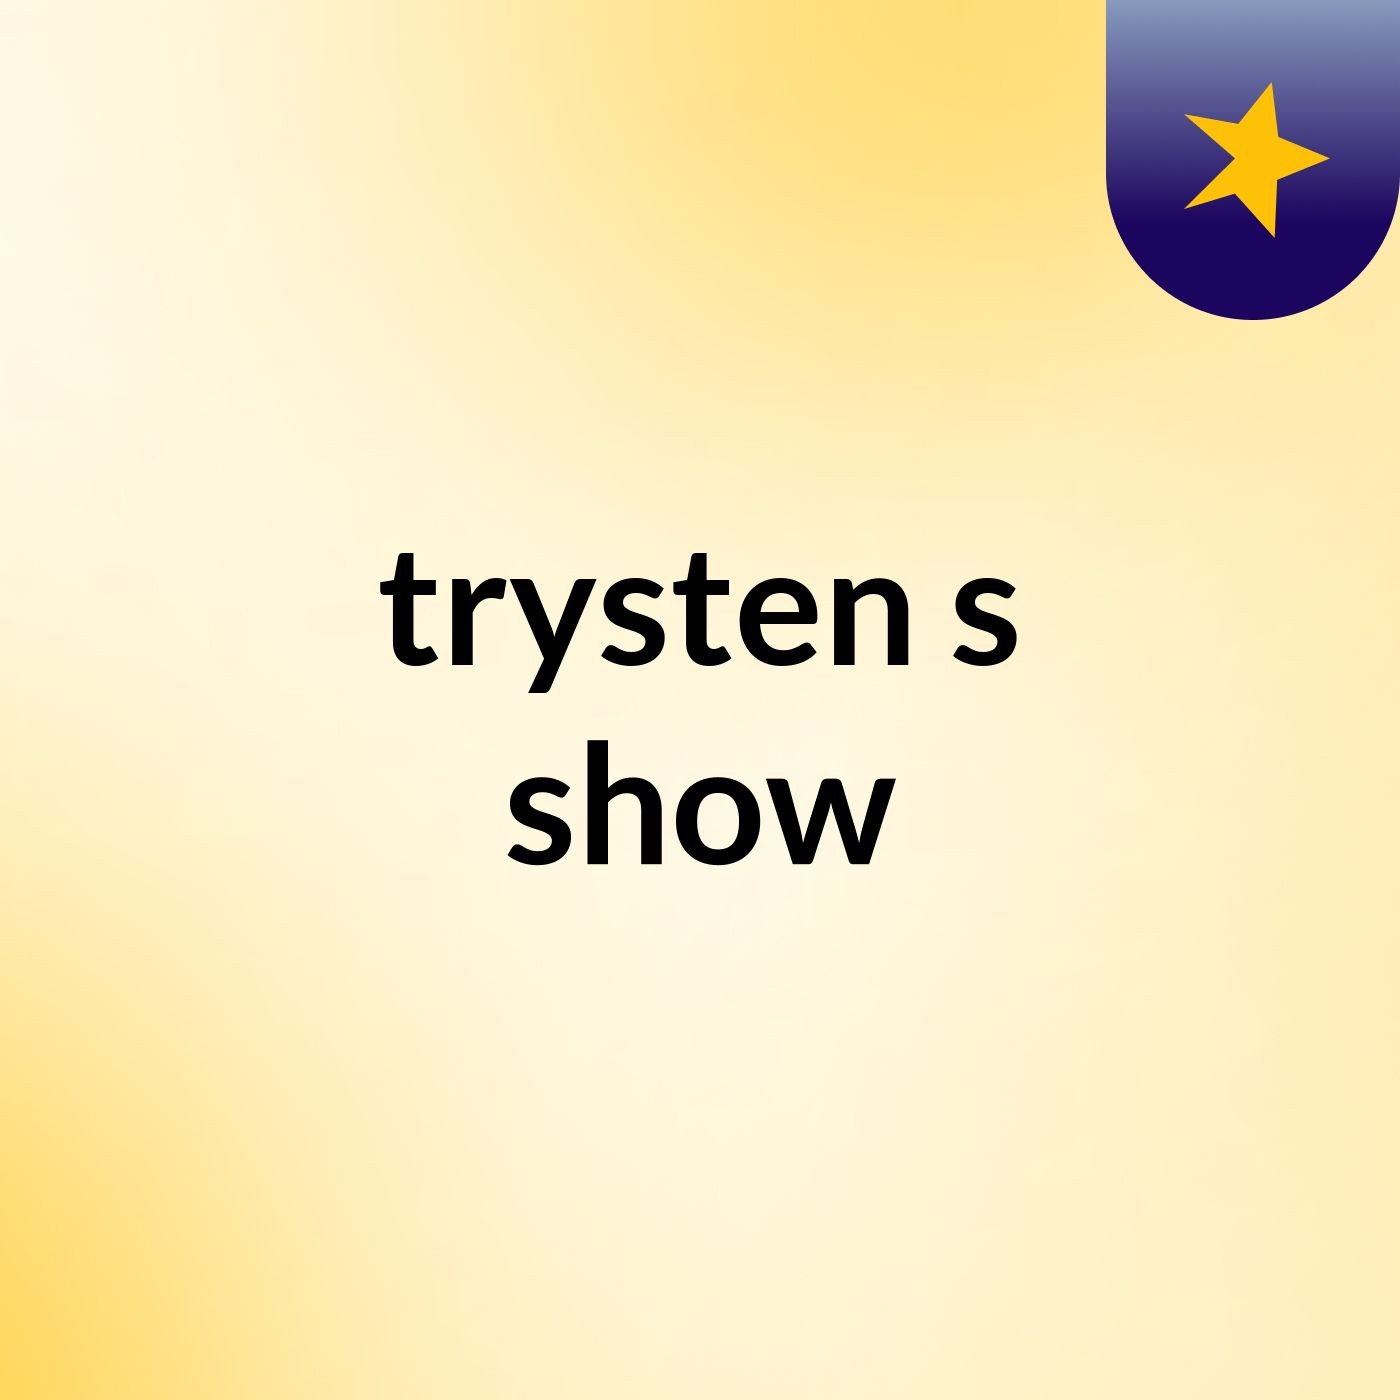 trysten's show